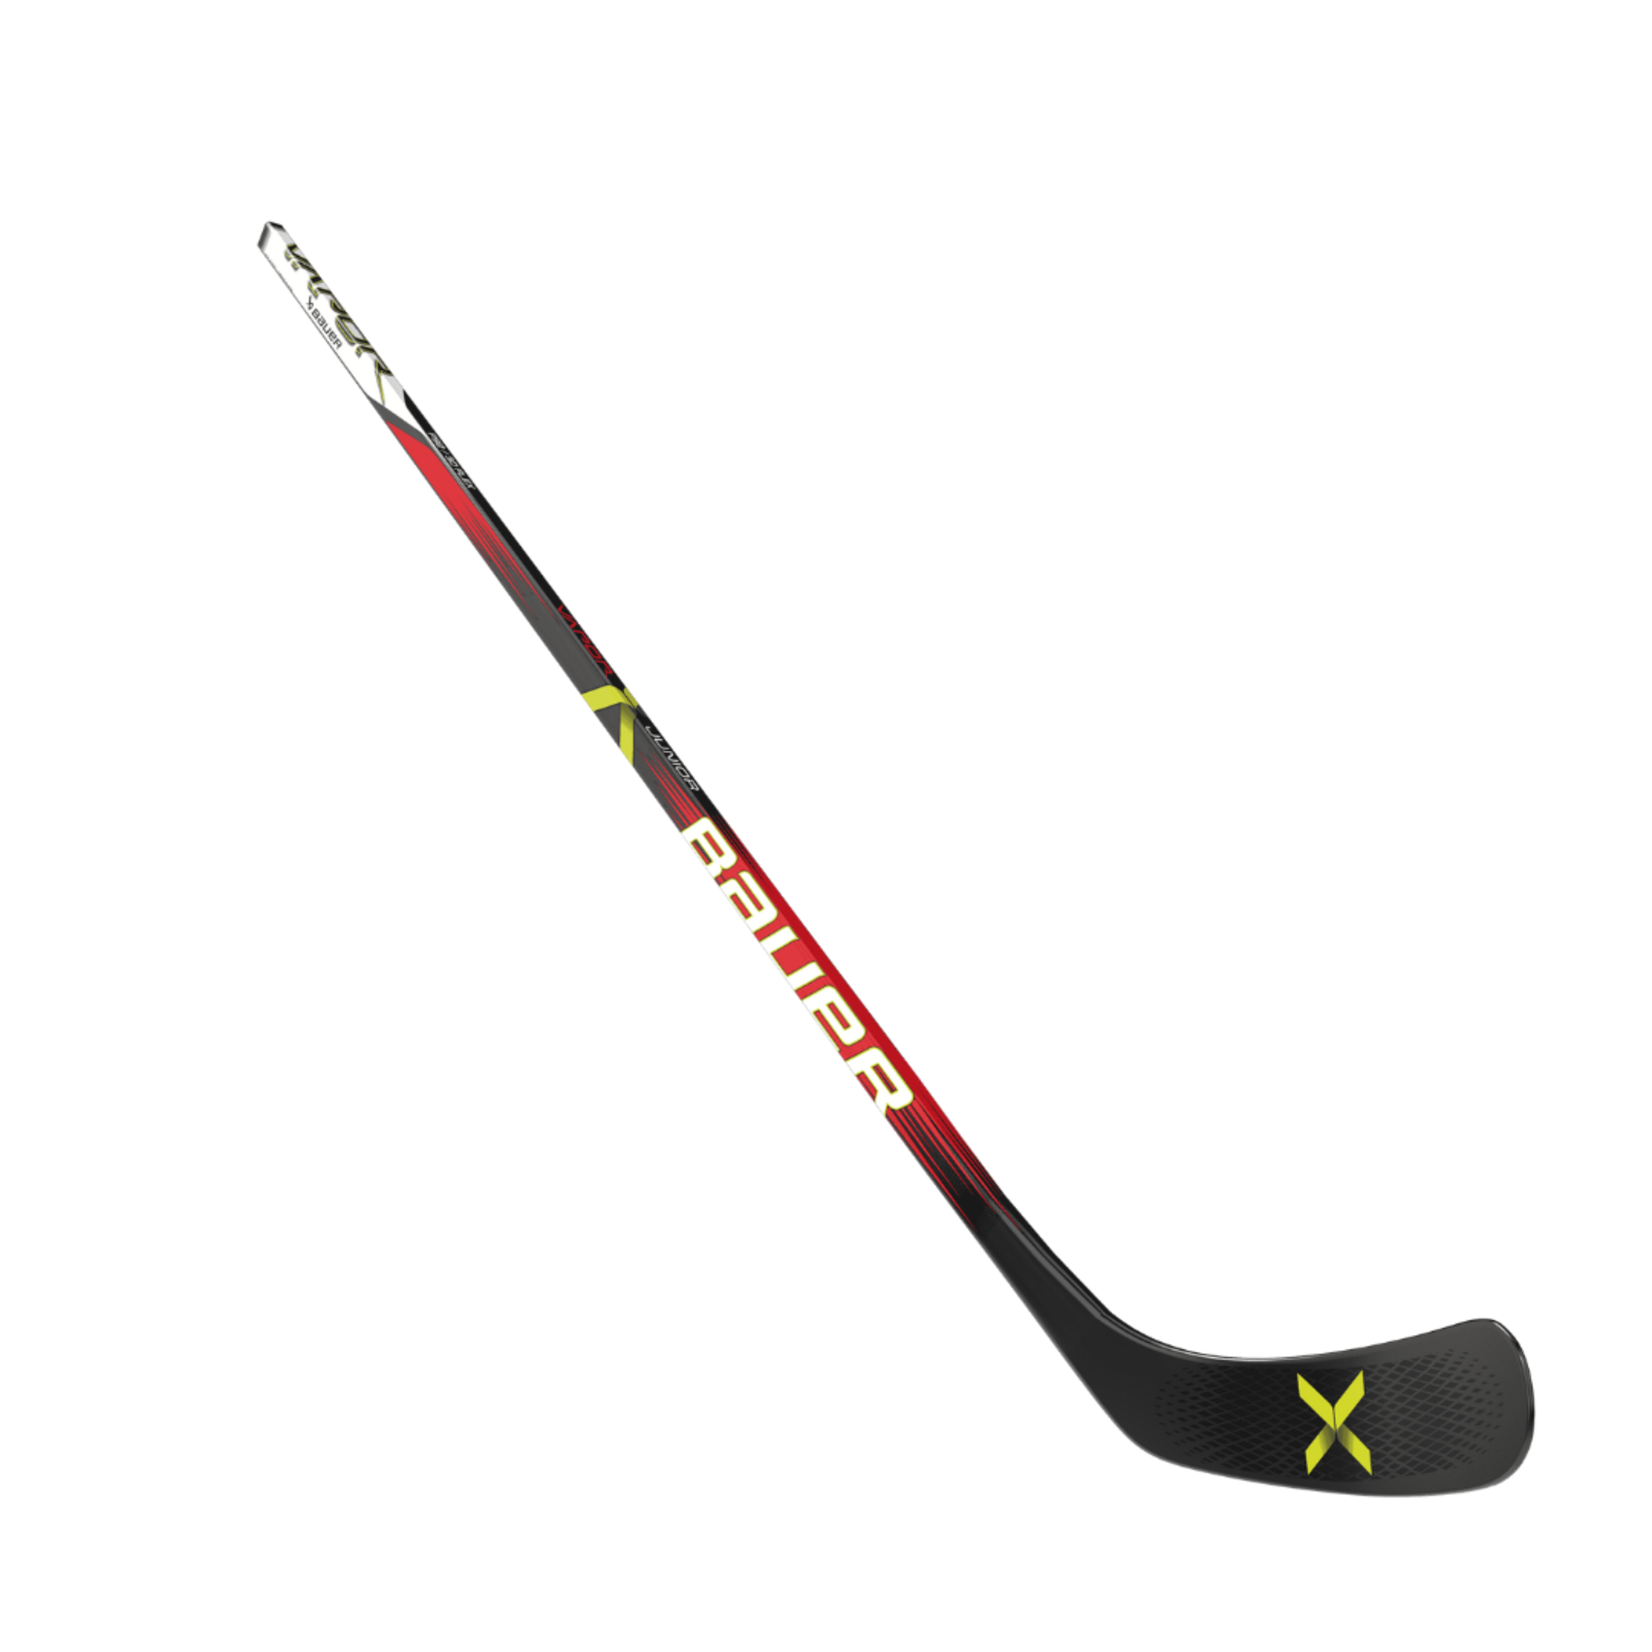 Bauer Bauer Hockey Stick, Vapor, Grip, Junior 50"